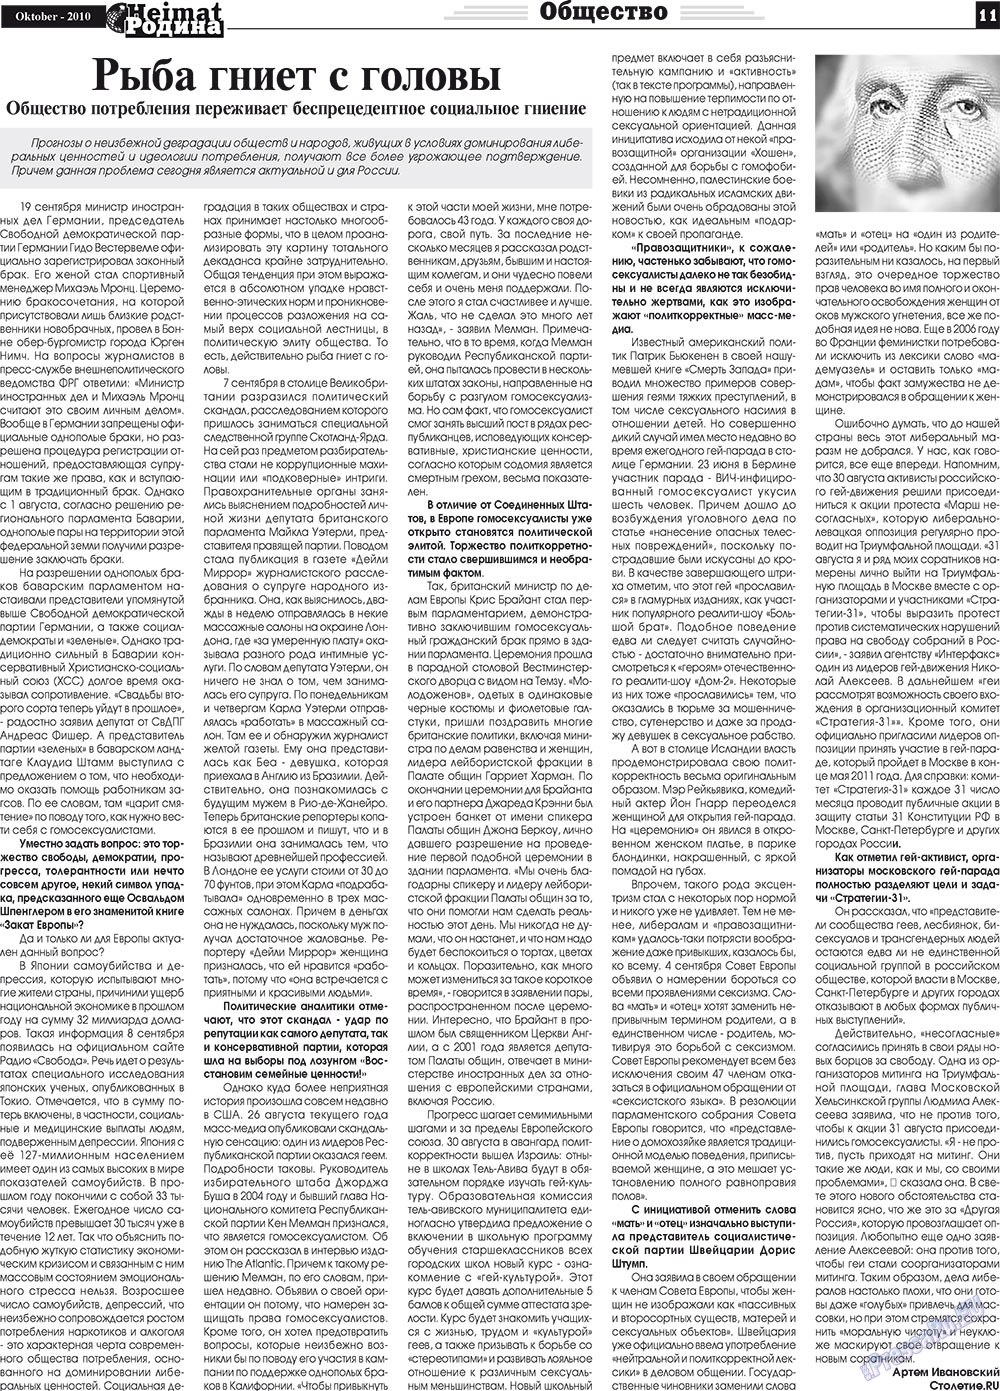 Heimat-Родина (газета). 2010 год, номер 10, стр. 11